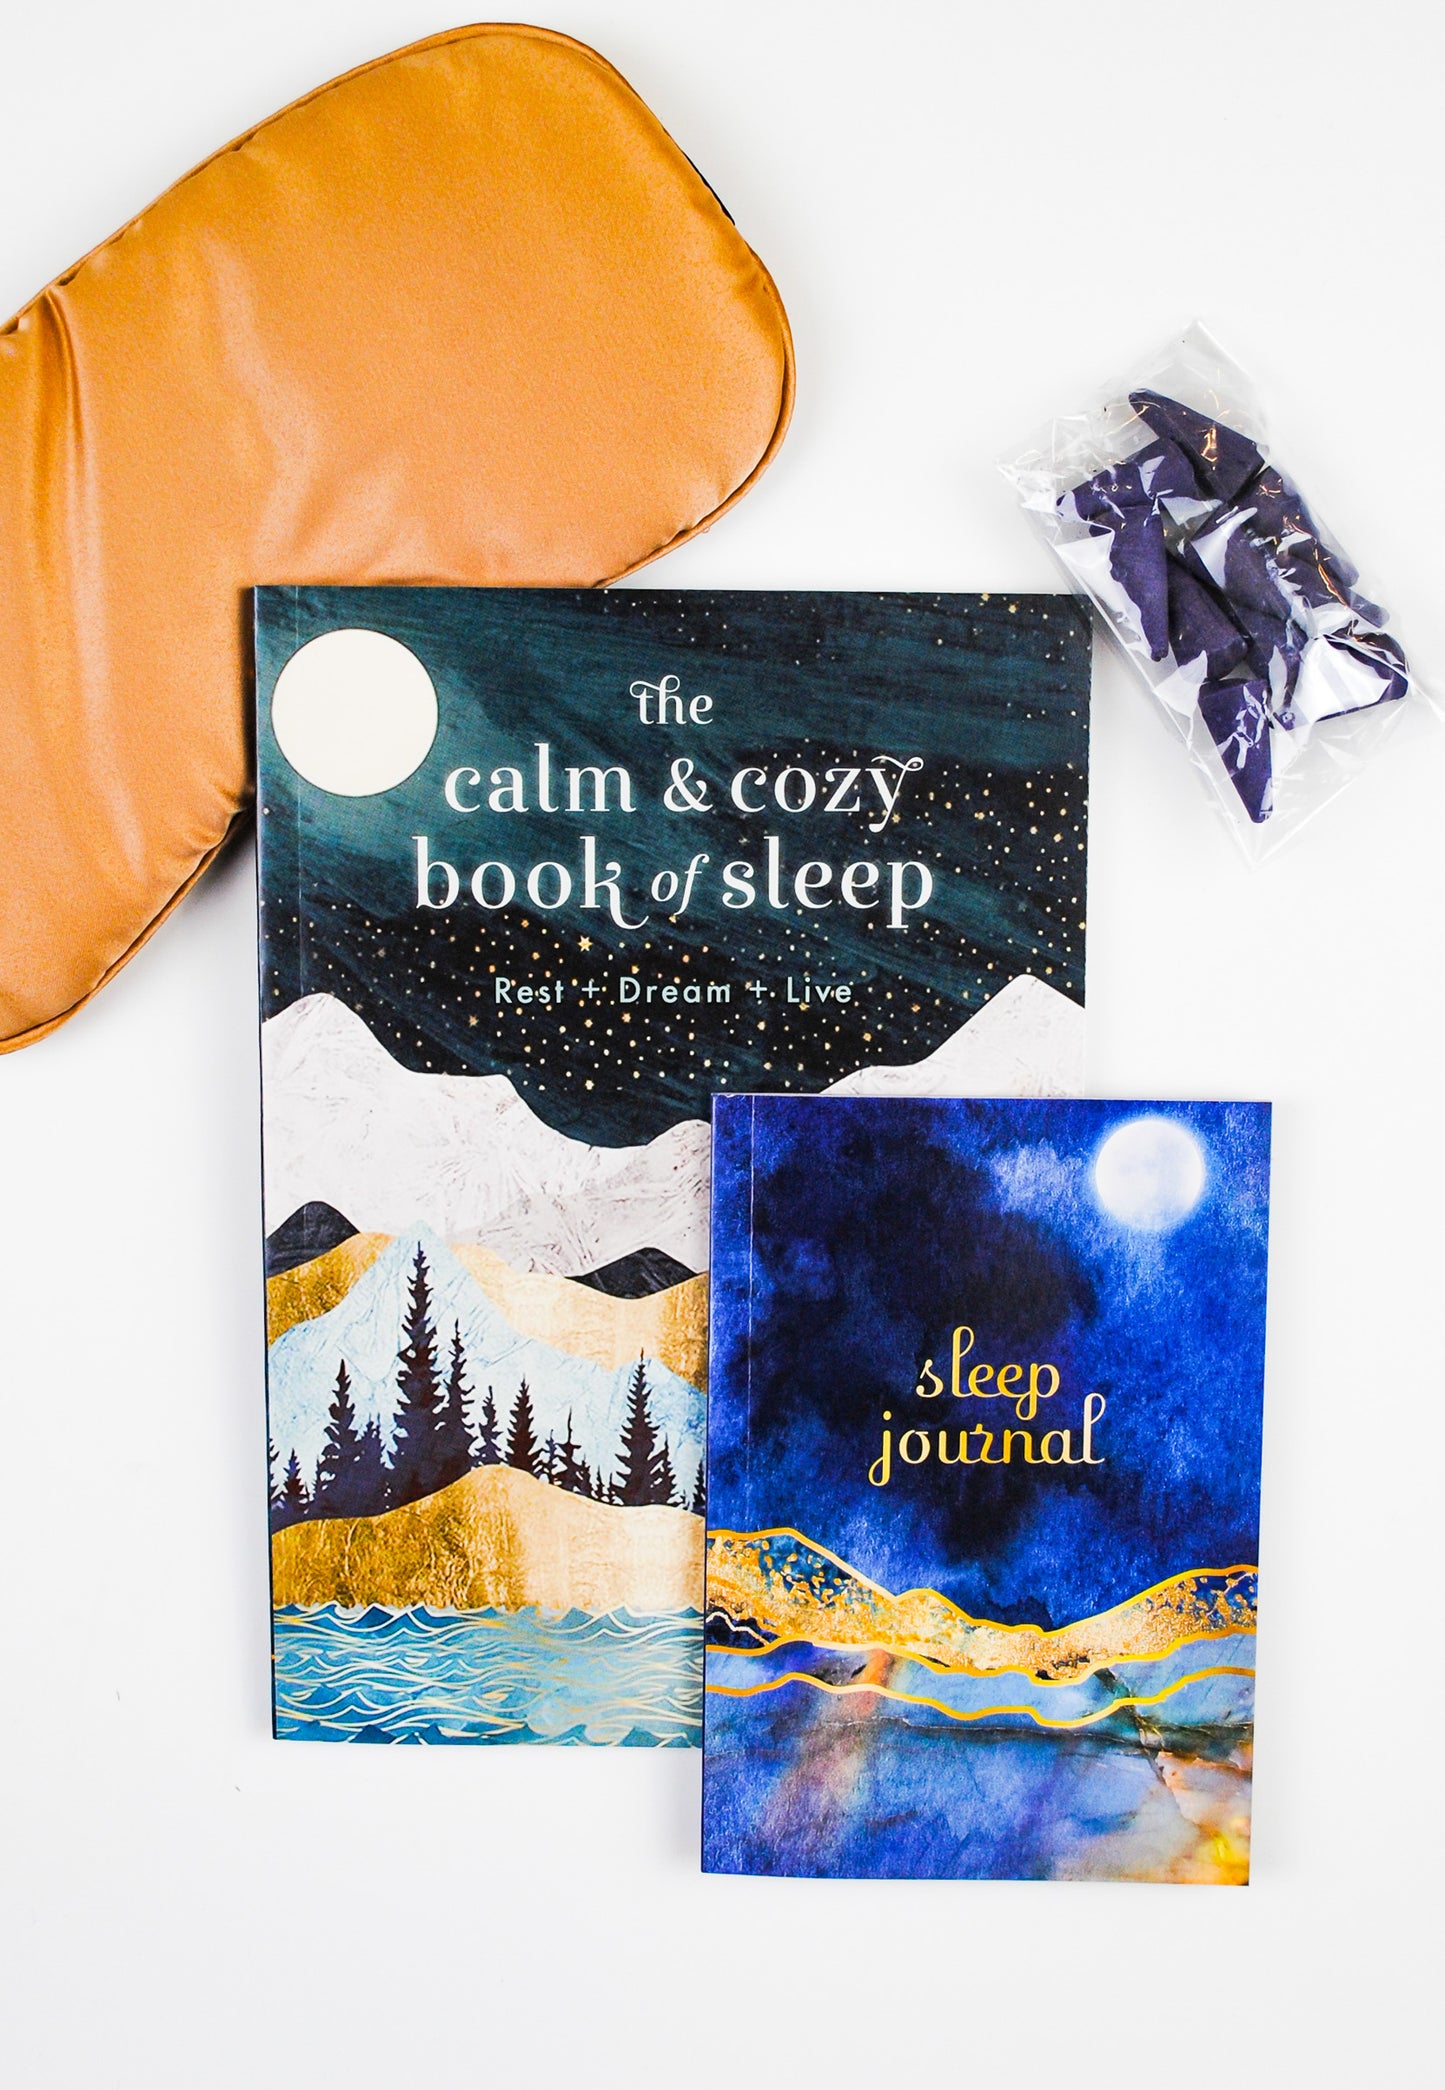 The Calm & Cozy Sleep Kit